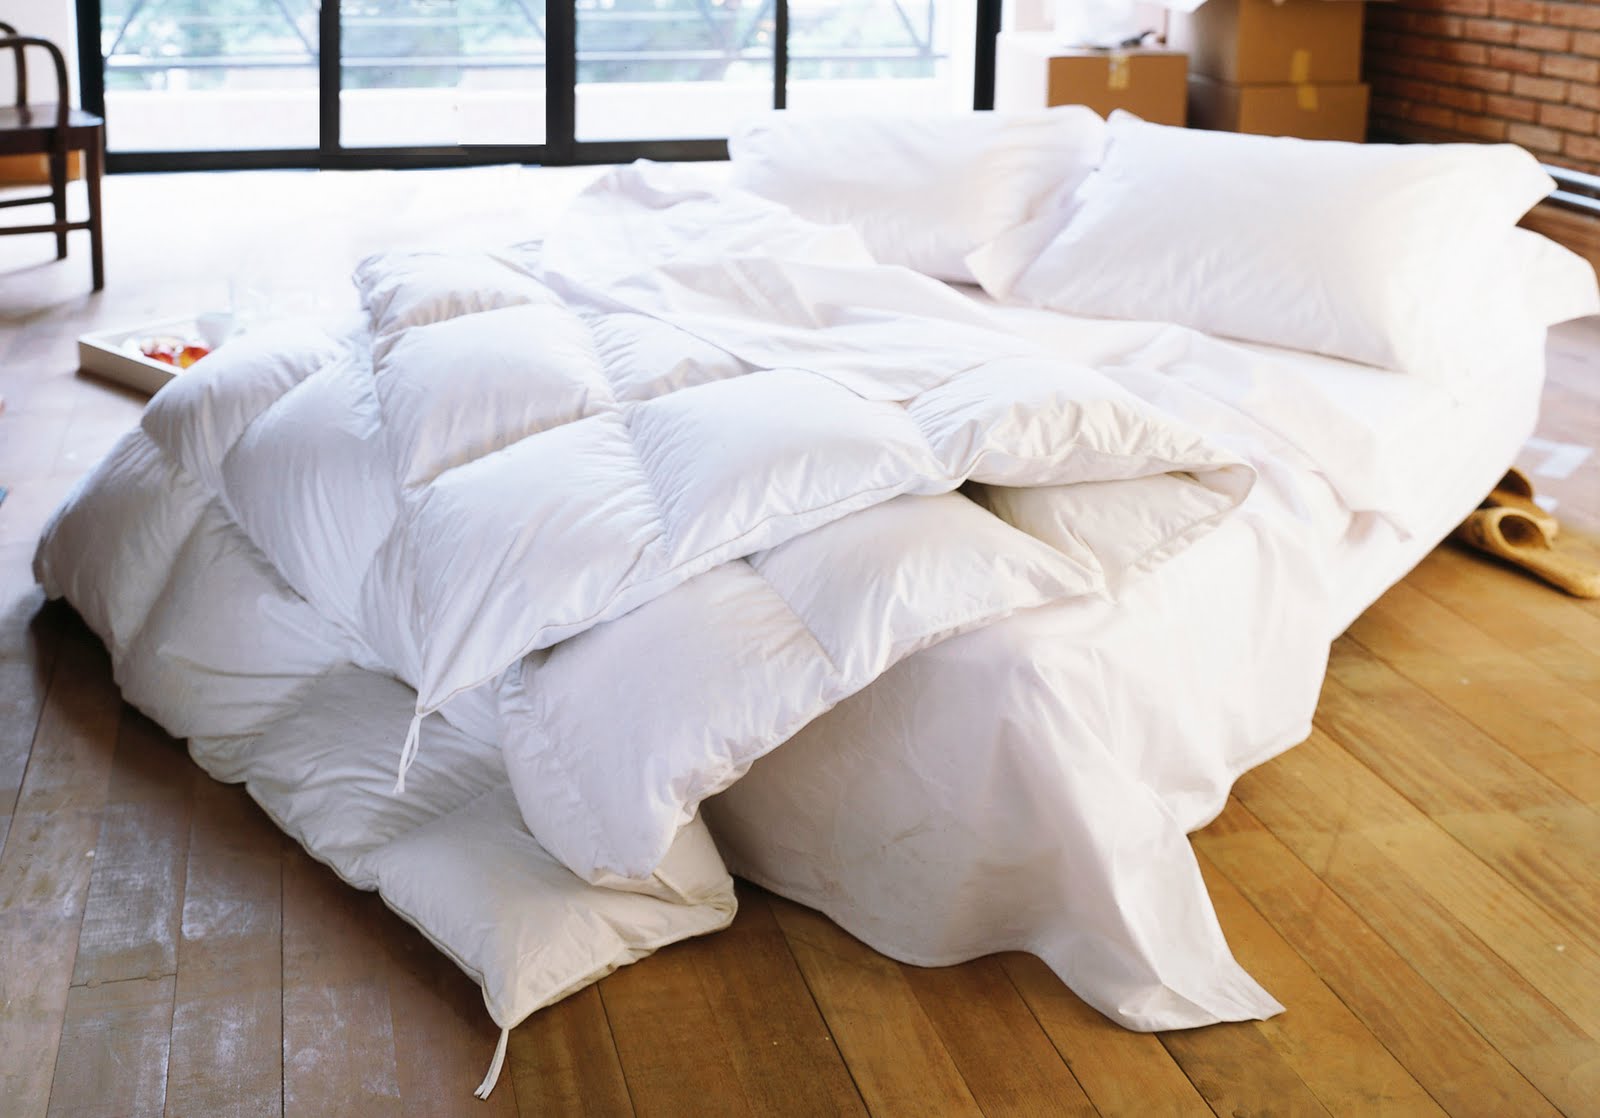 Lavagem das cobertas: com que frequência você tira os lençóis da cama para lavar?